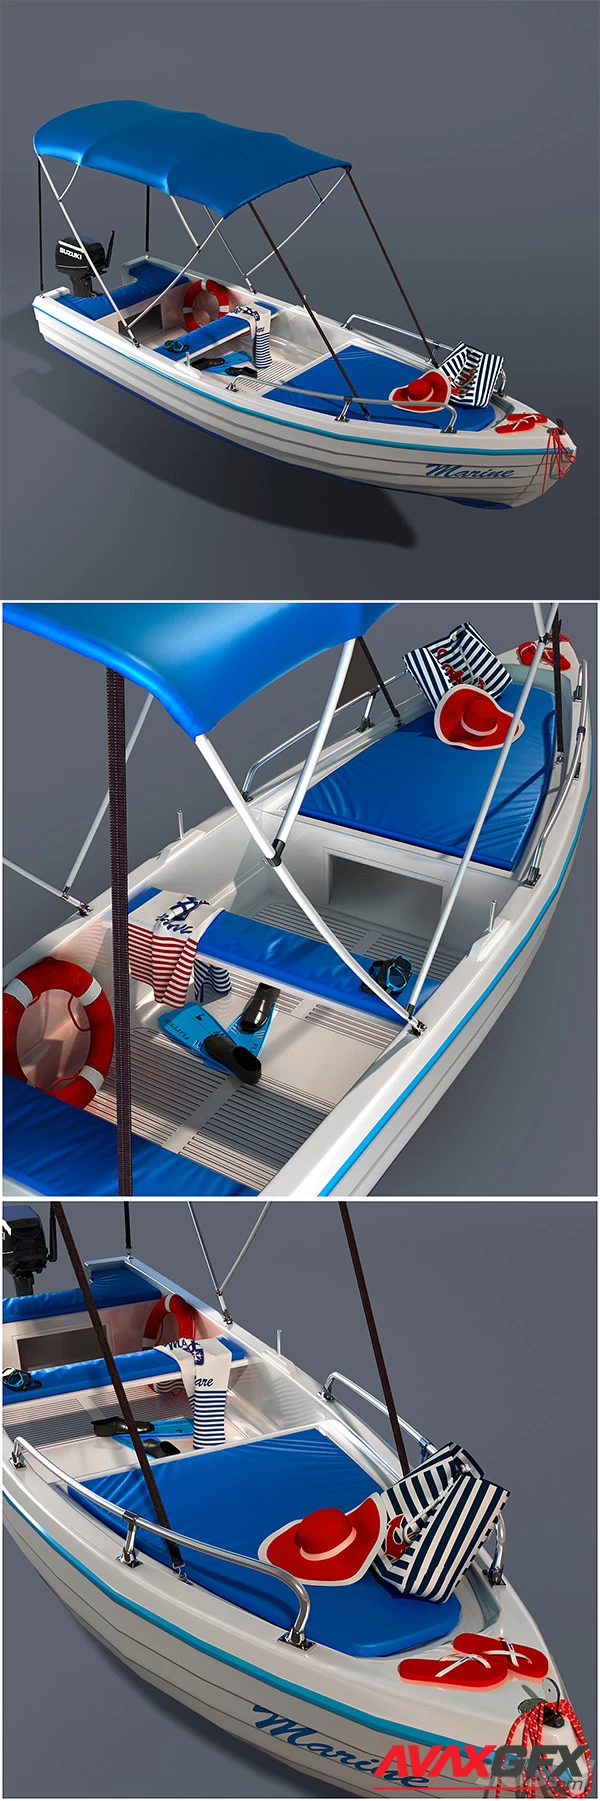 Leisure boat 3D Model